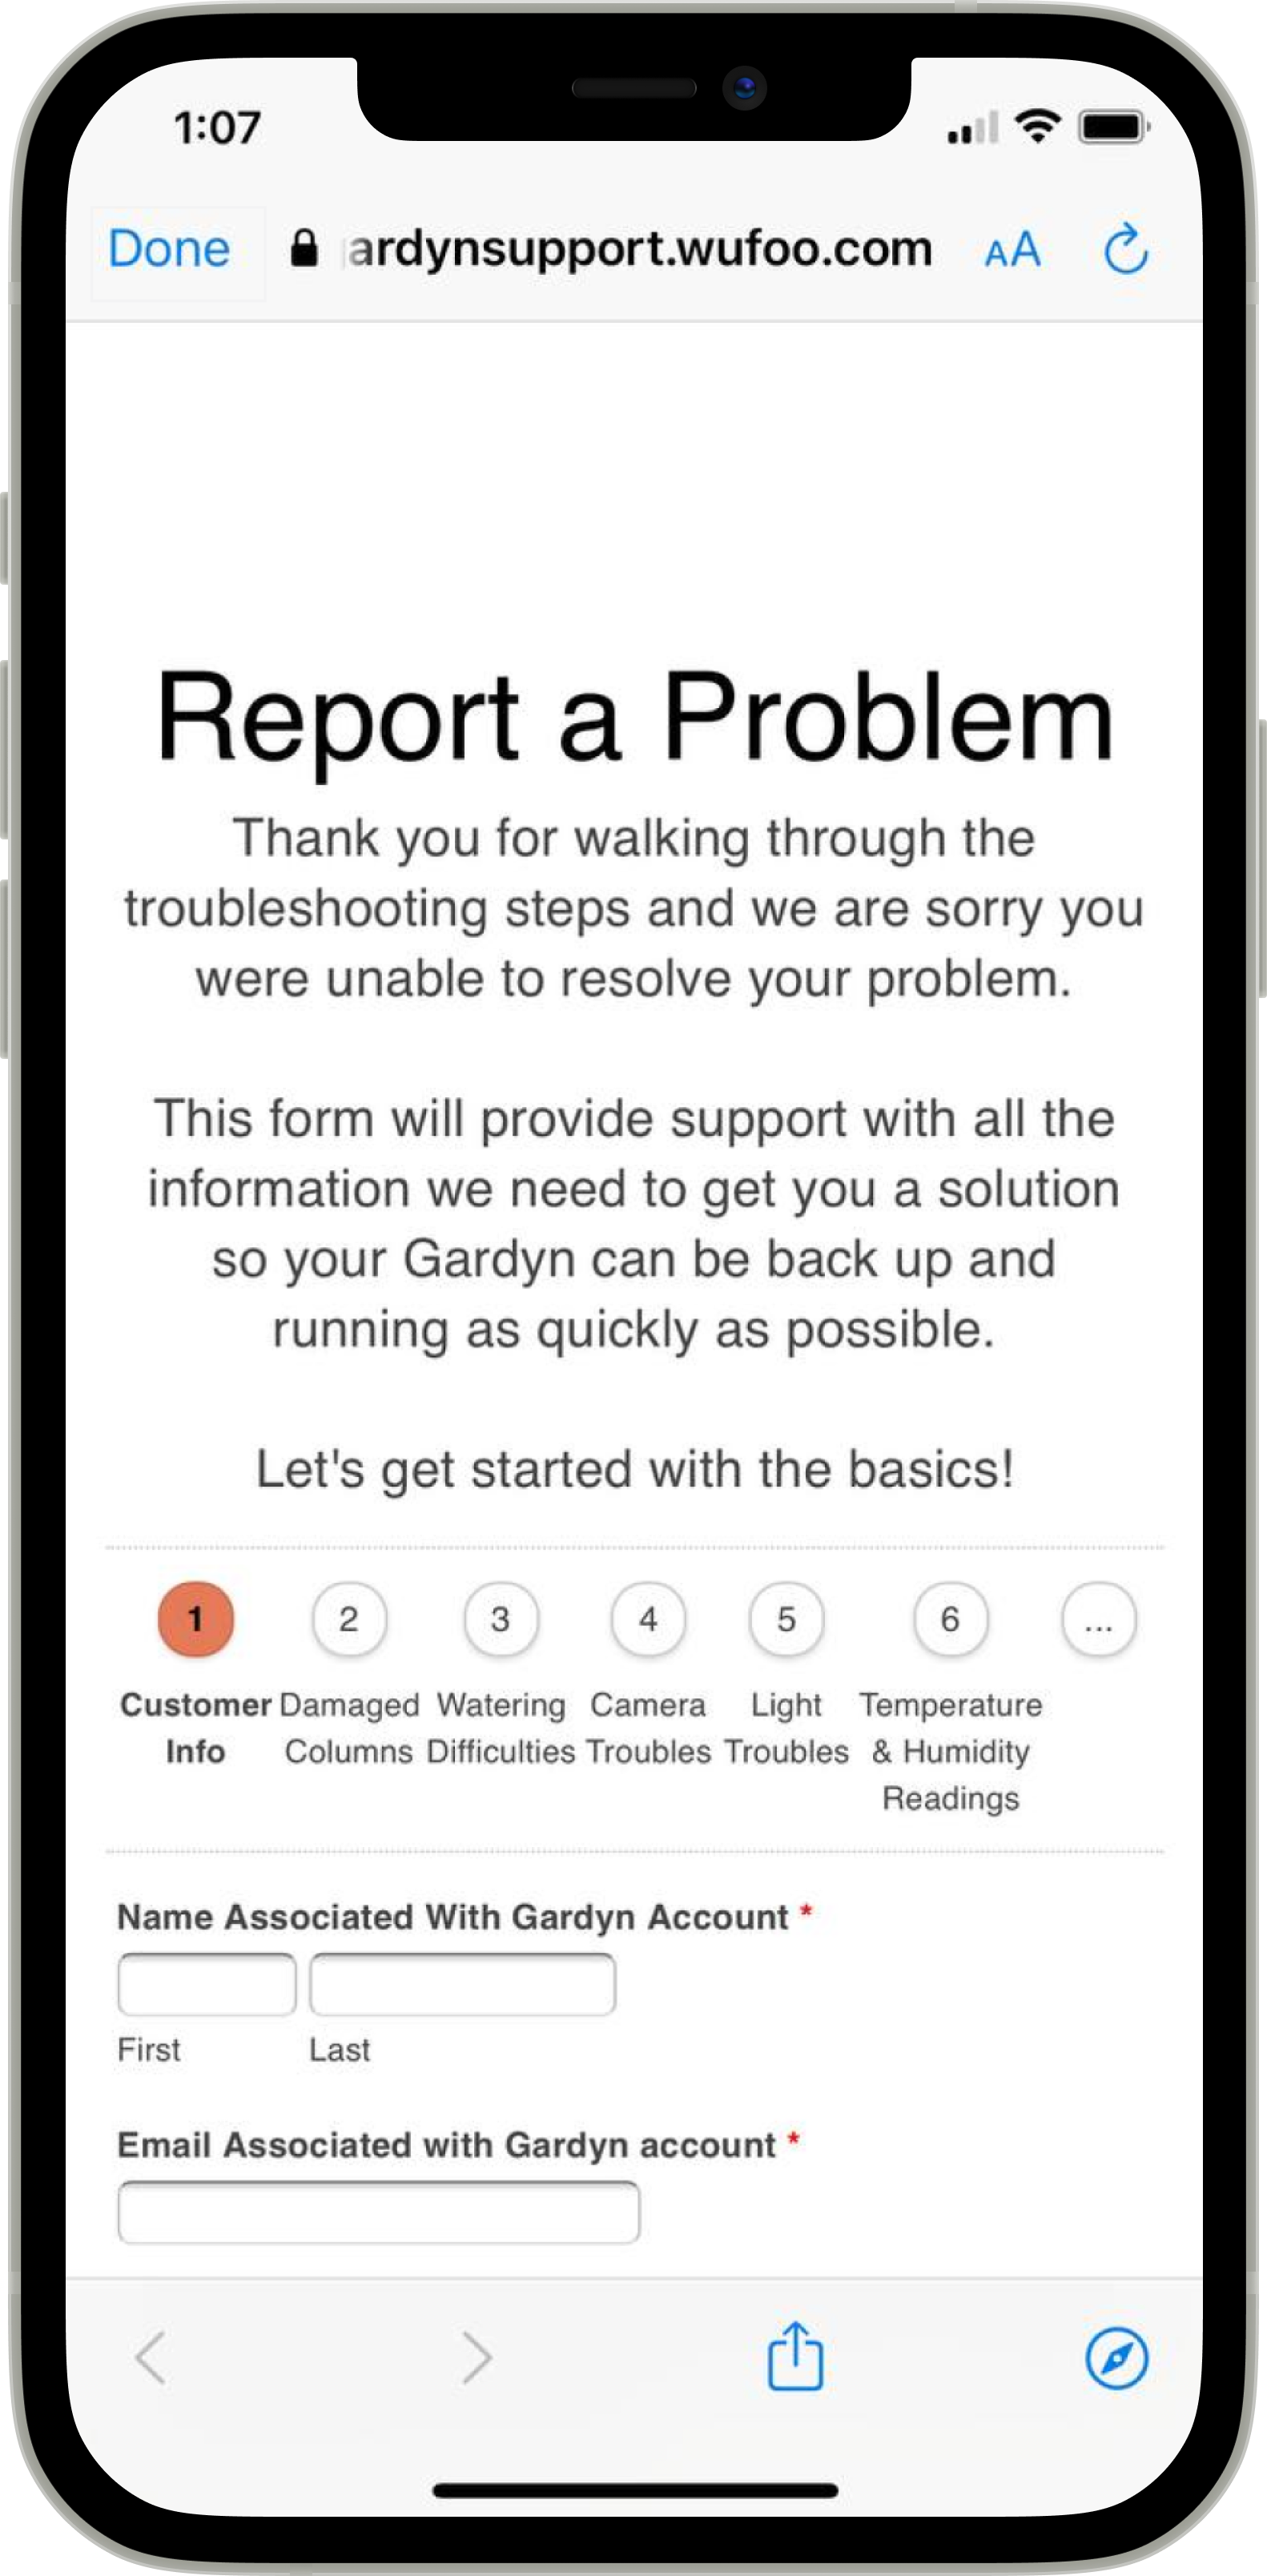 Screen_Report_a_Problem.png